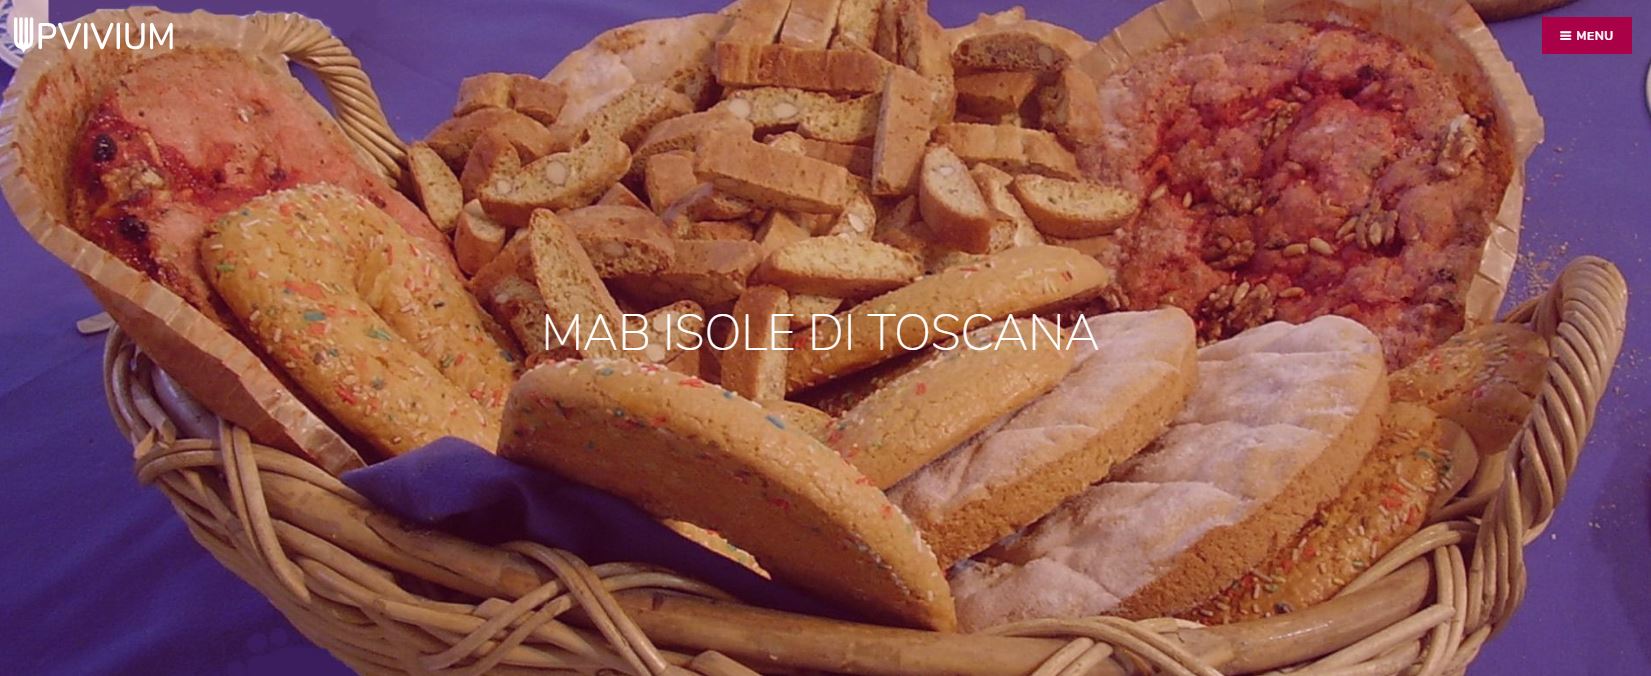 Il Parco Nazionale Arcipelago Toscano, Riserva MAB Unesco 'Isole di Toscana' aderisce al contest gastronomico UPVIVIUM